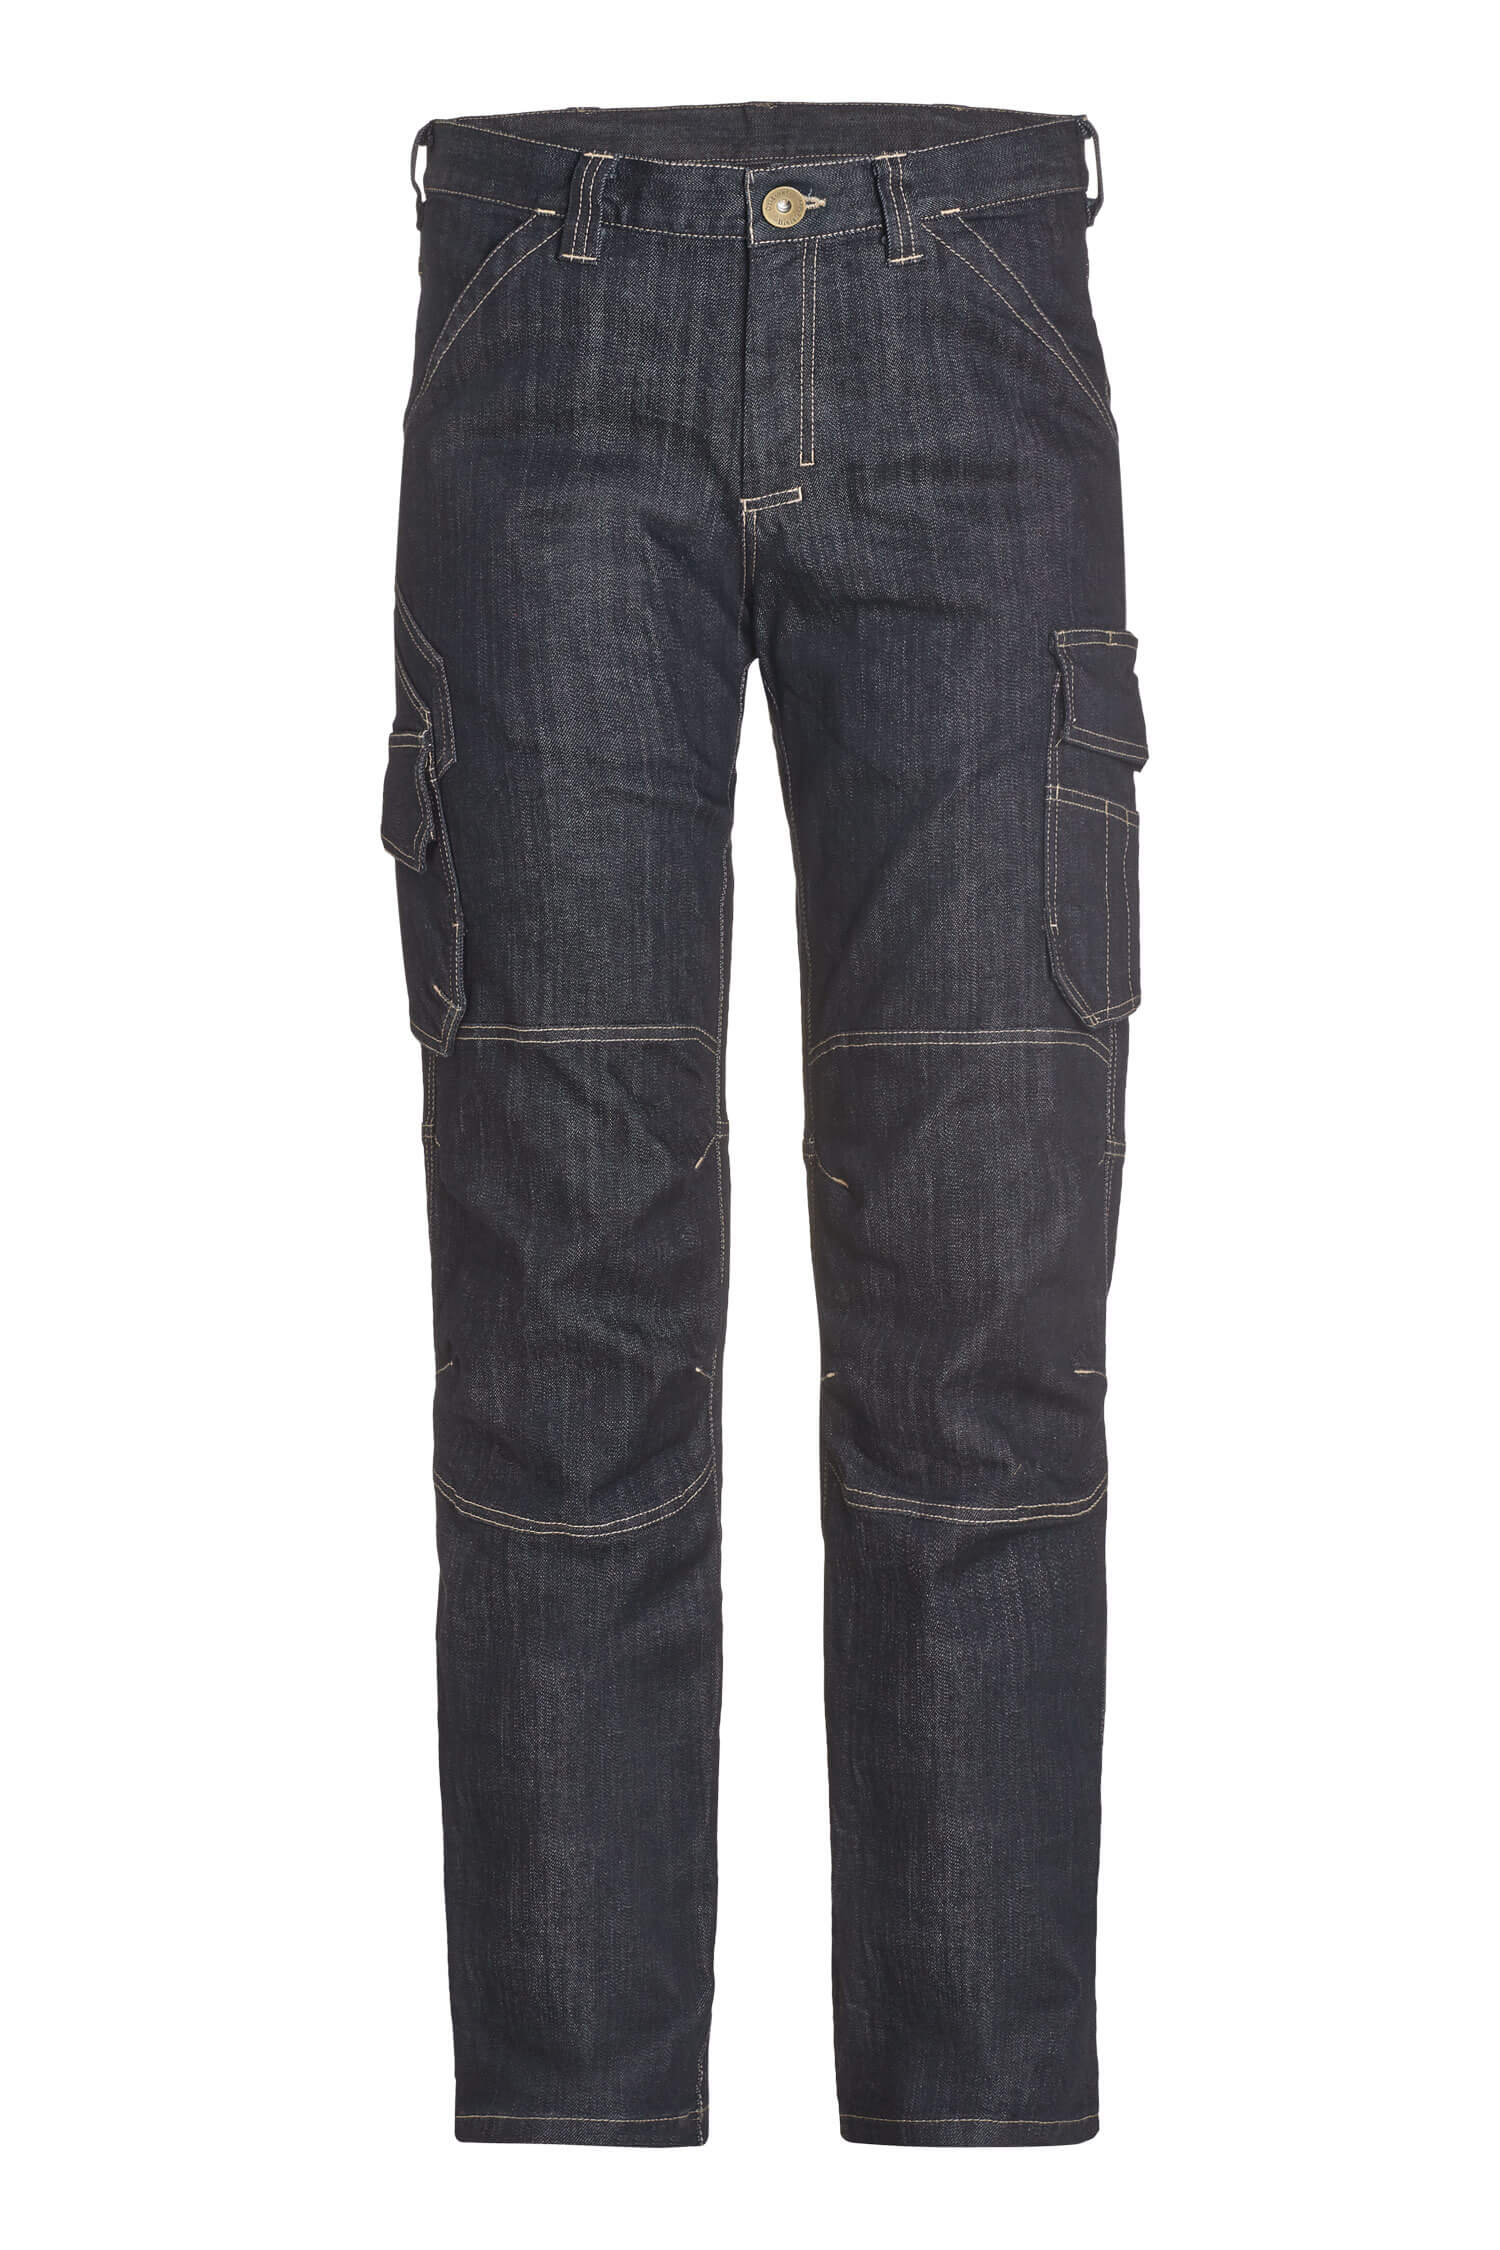 FHB WILHELM Jeans Arbeitshose, schwarzblau, Gr. 98